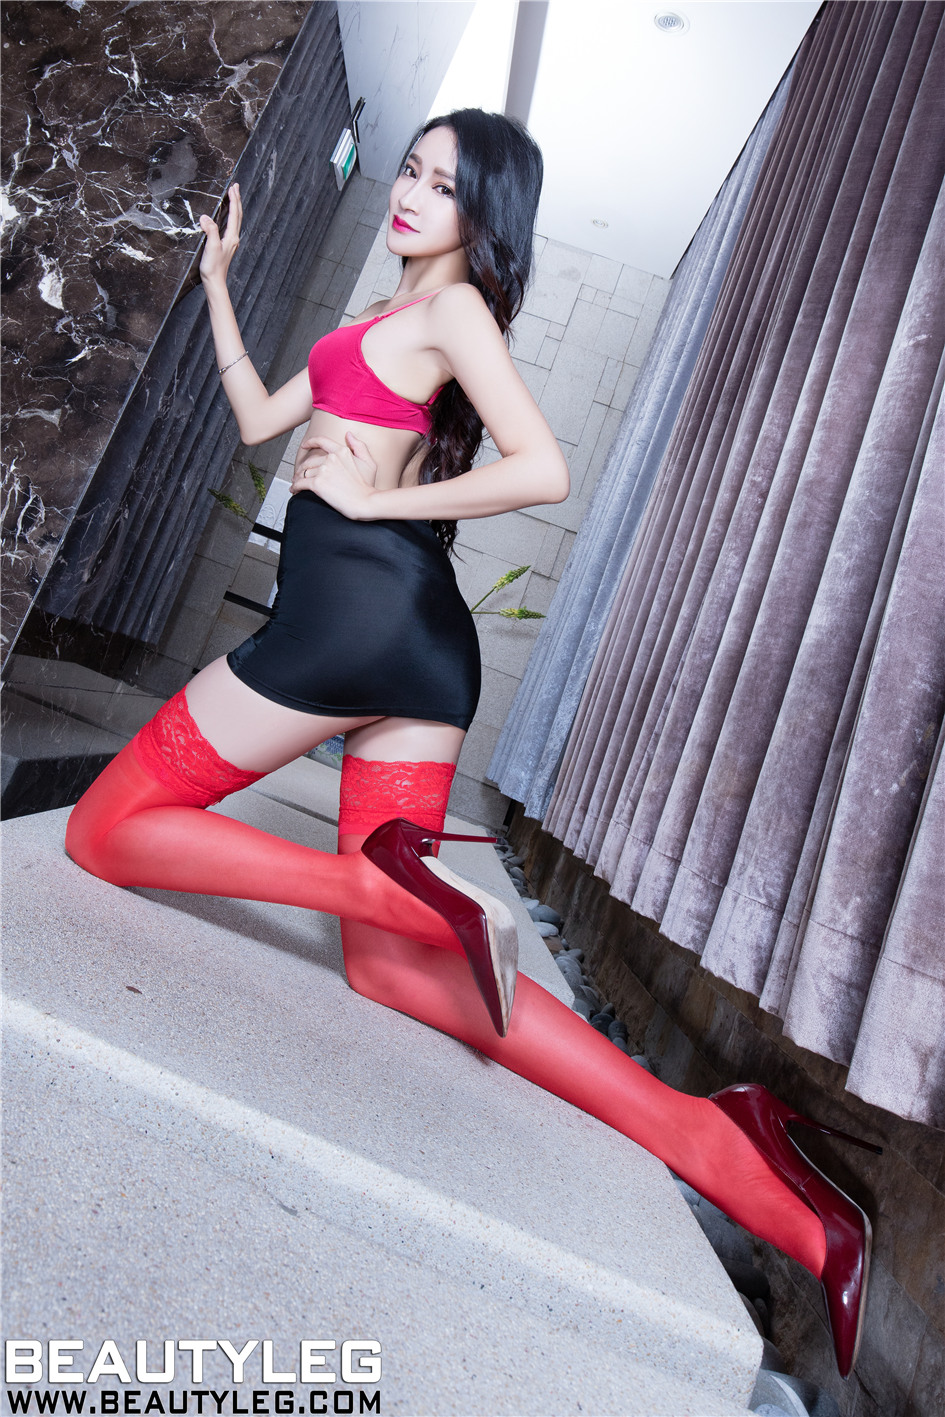 [Beautyleg] 红色丝袜美女Avril超短裙美腿高清图片 No.1376第4张